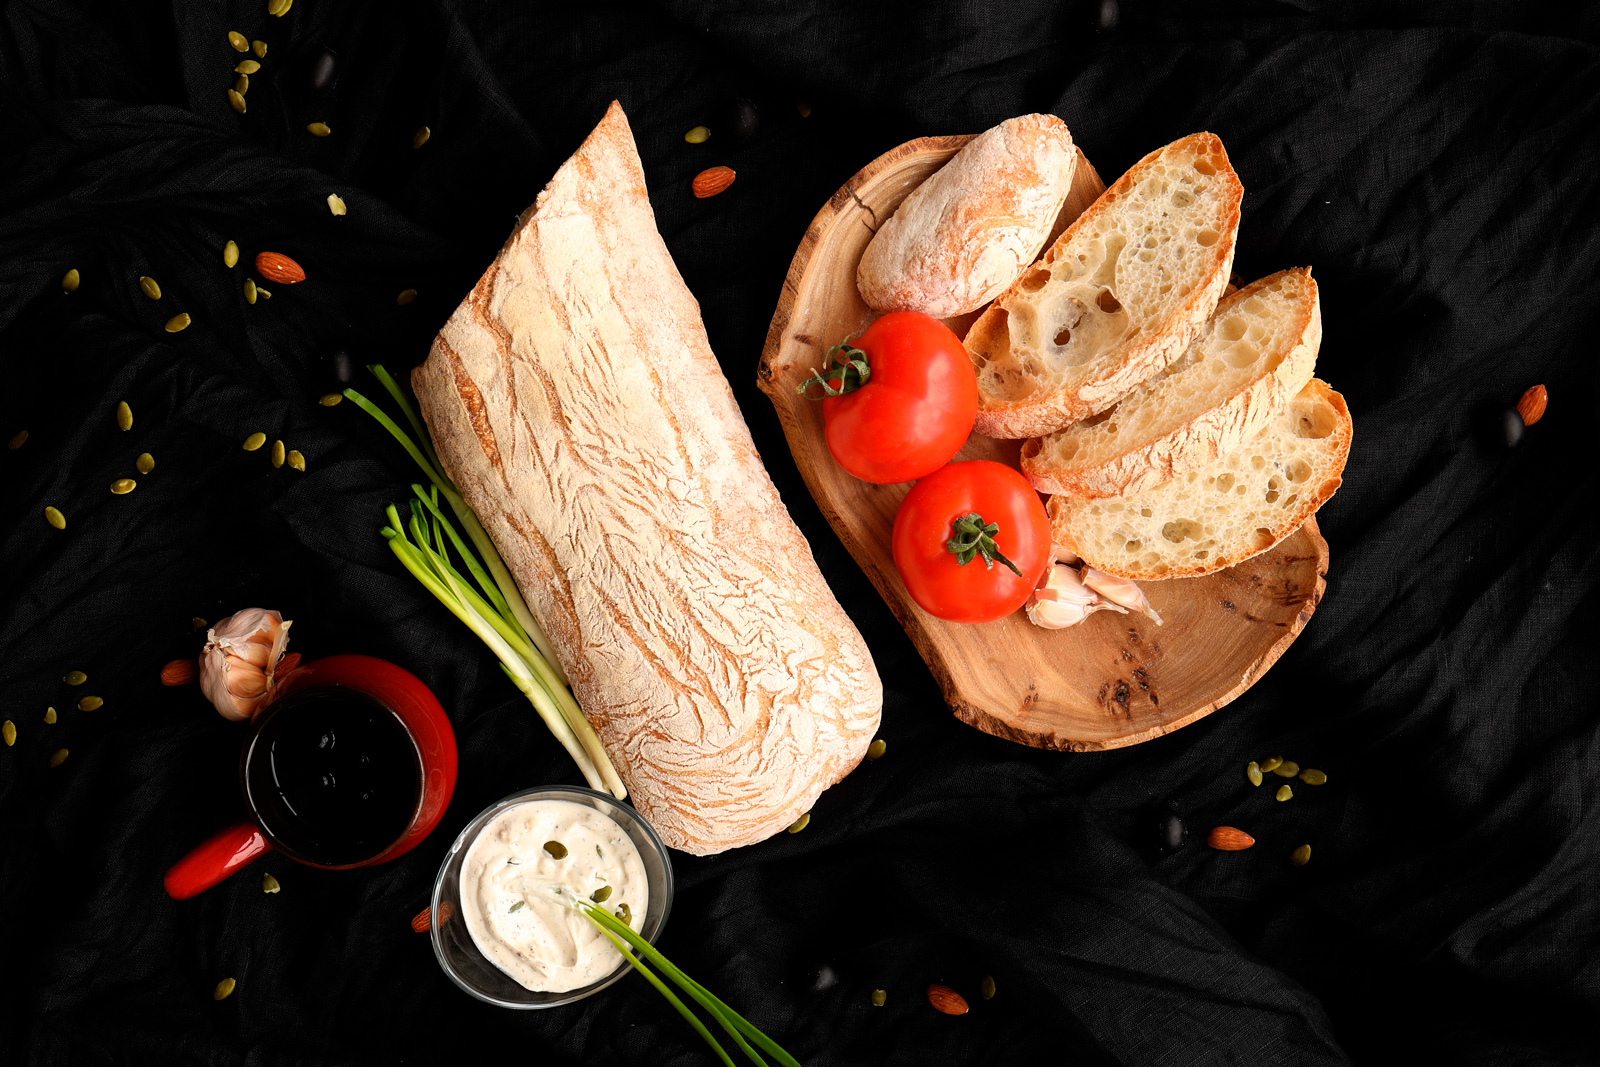 фотоссесия food photo хлеб итальянский с помидорами и сметаной 